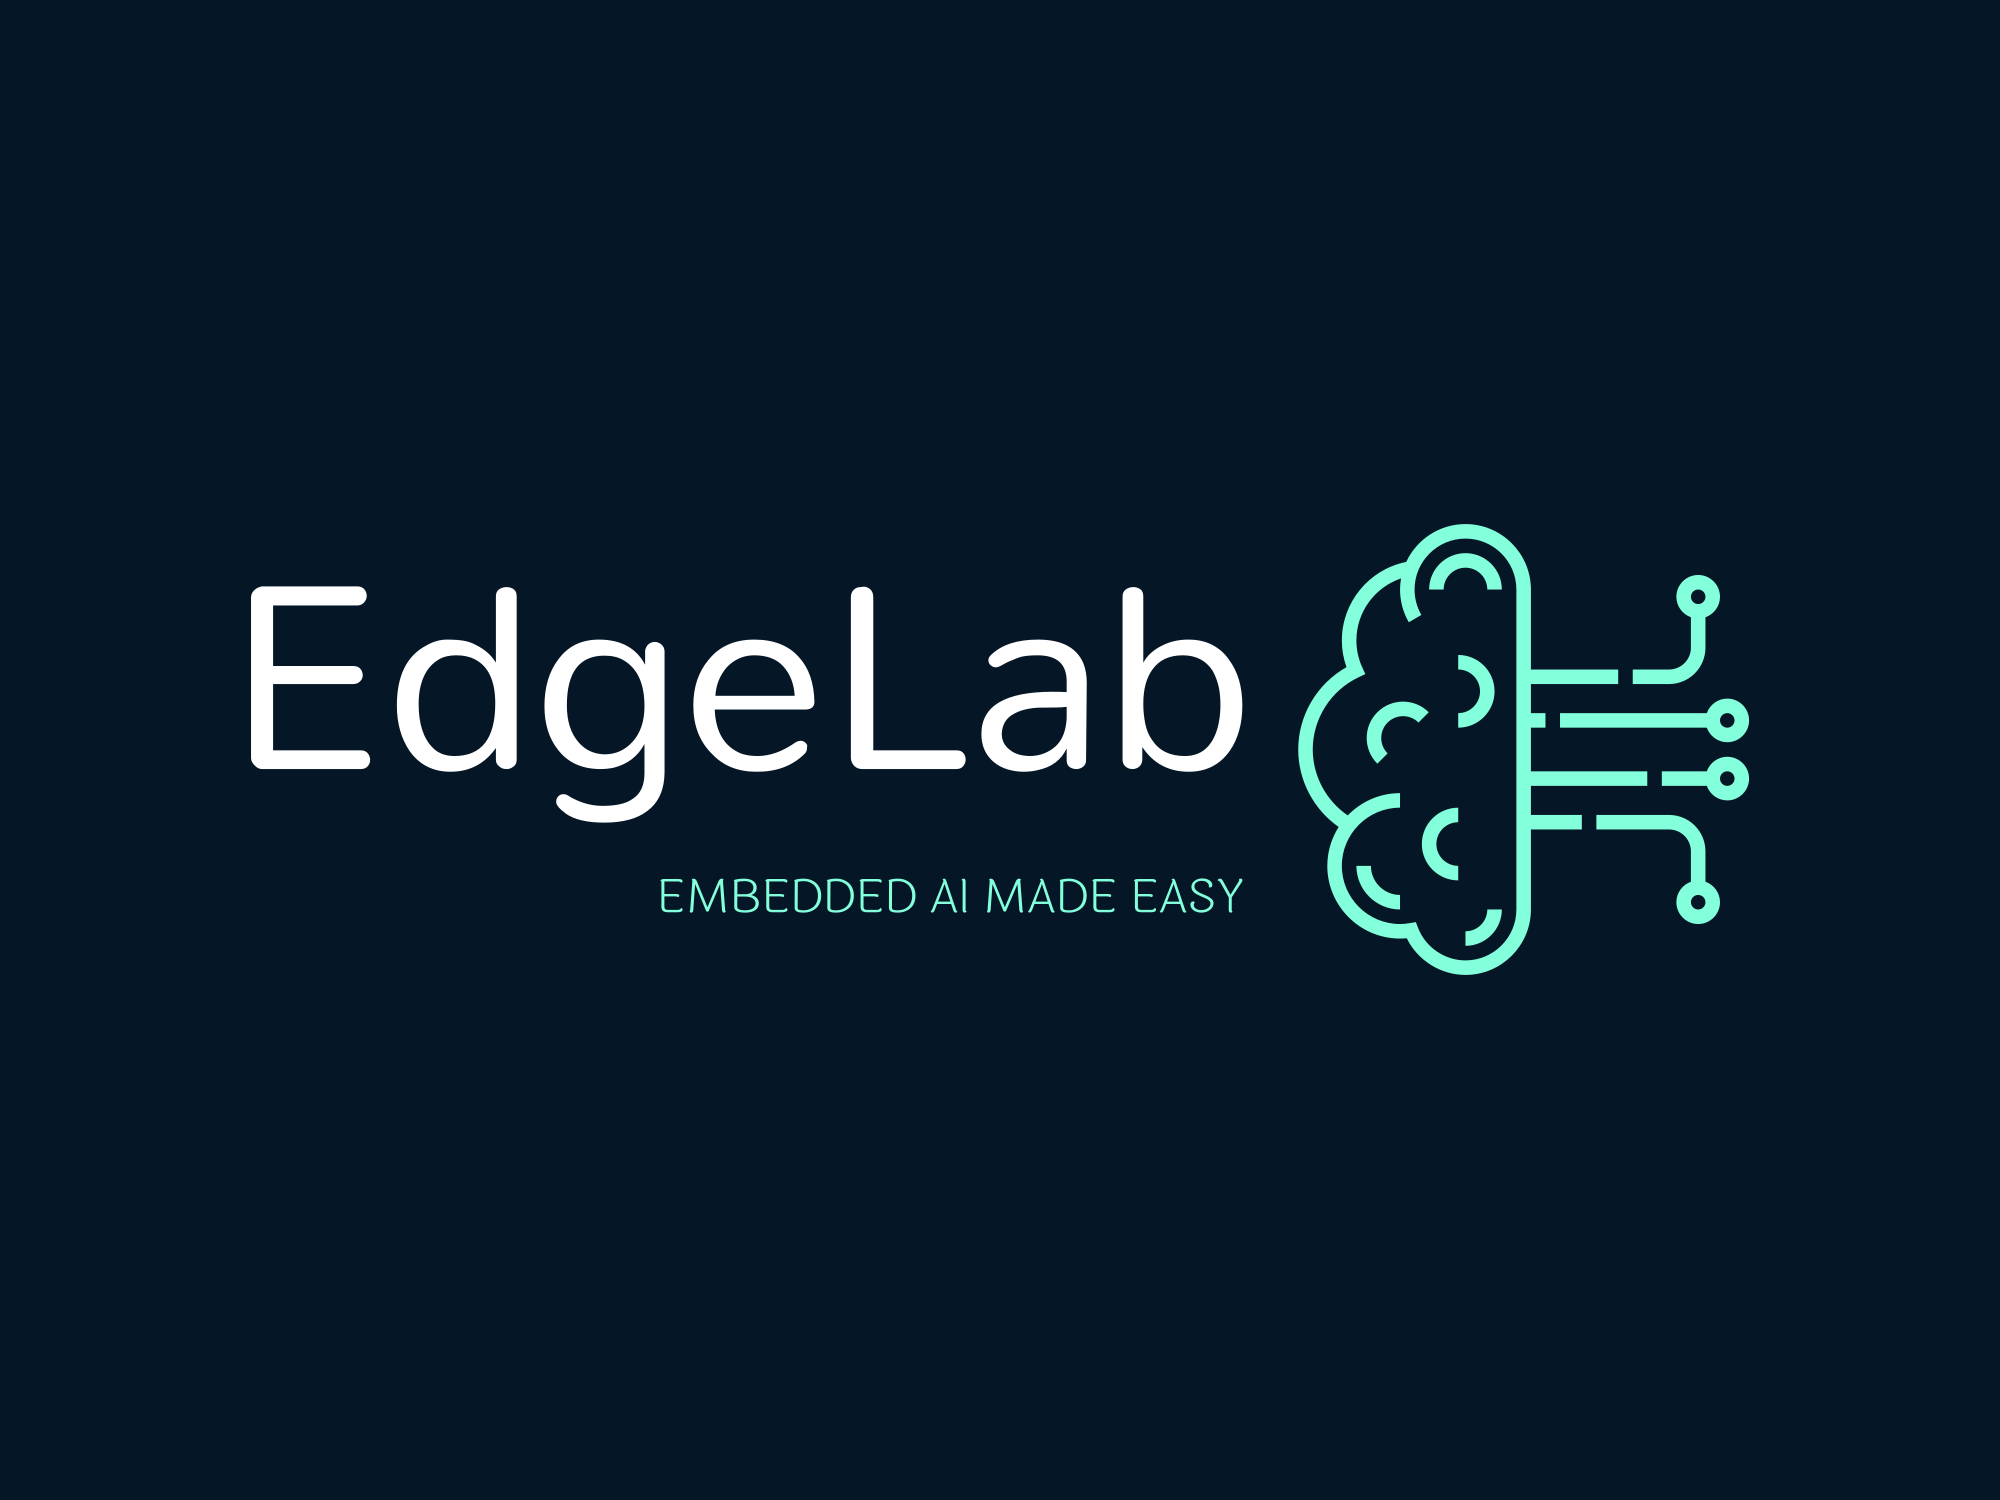 Edge Lab